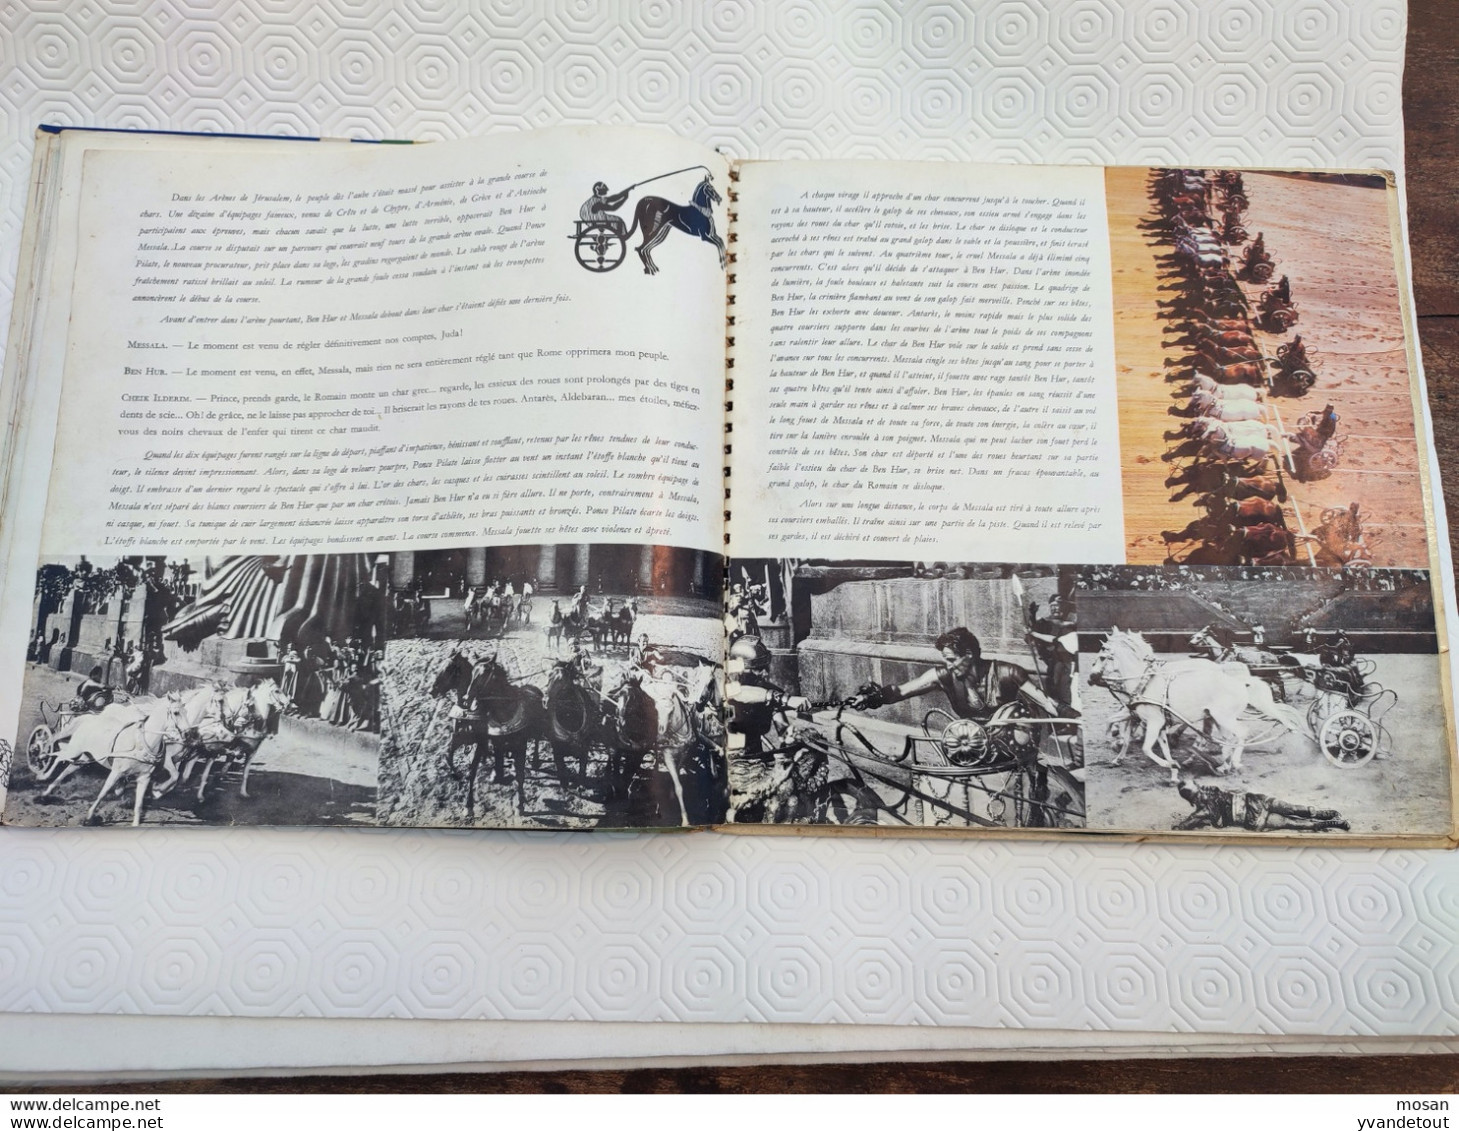 Ben-Hur raconté par Jean Desailly avec Serge Reggiani/ William Wyler. Livret + 2 disques